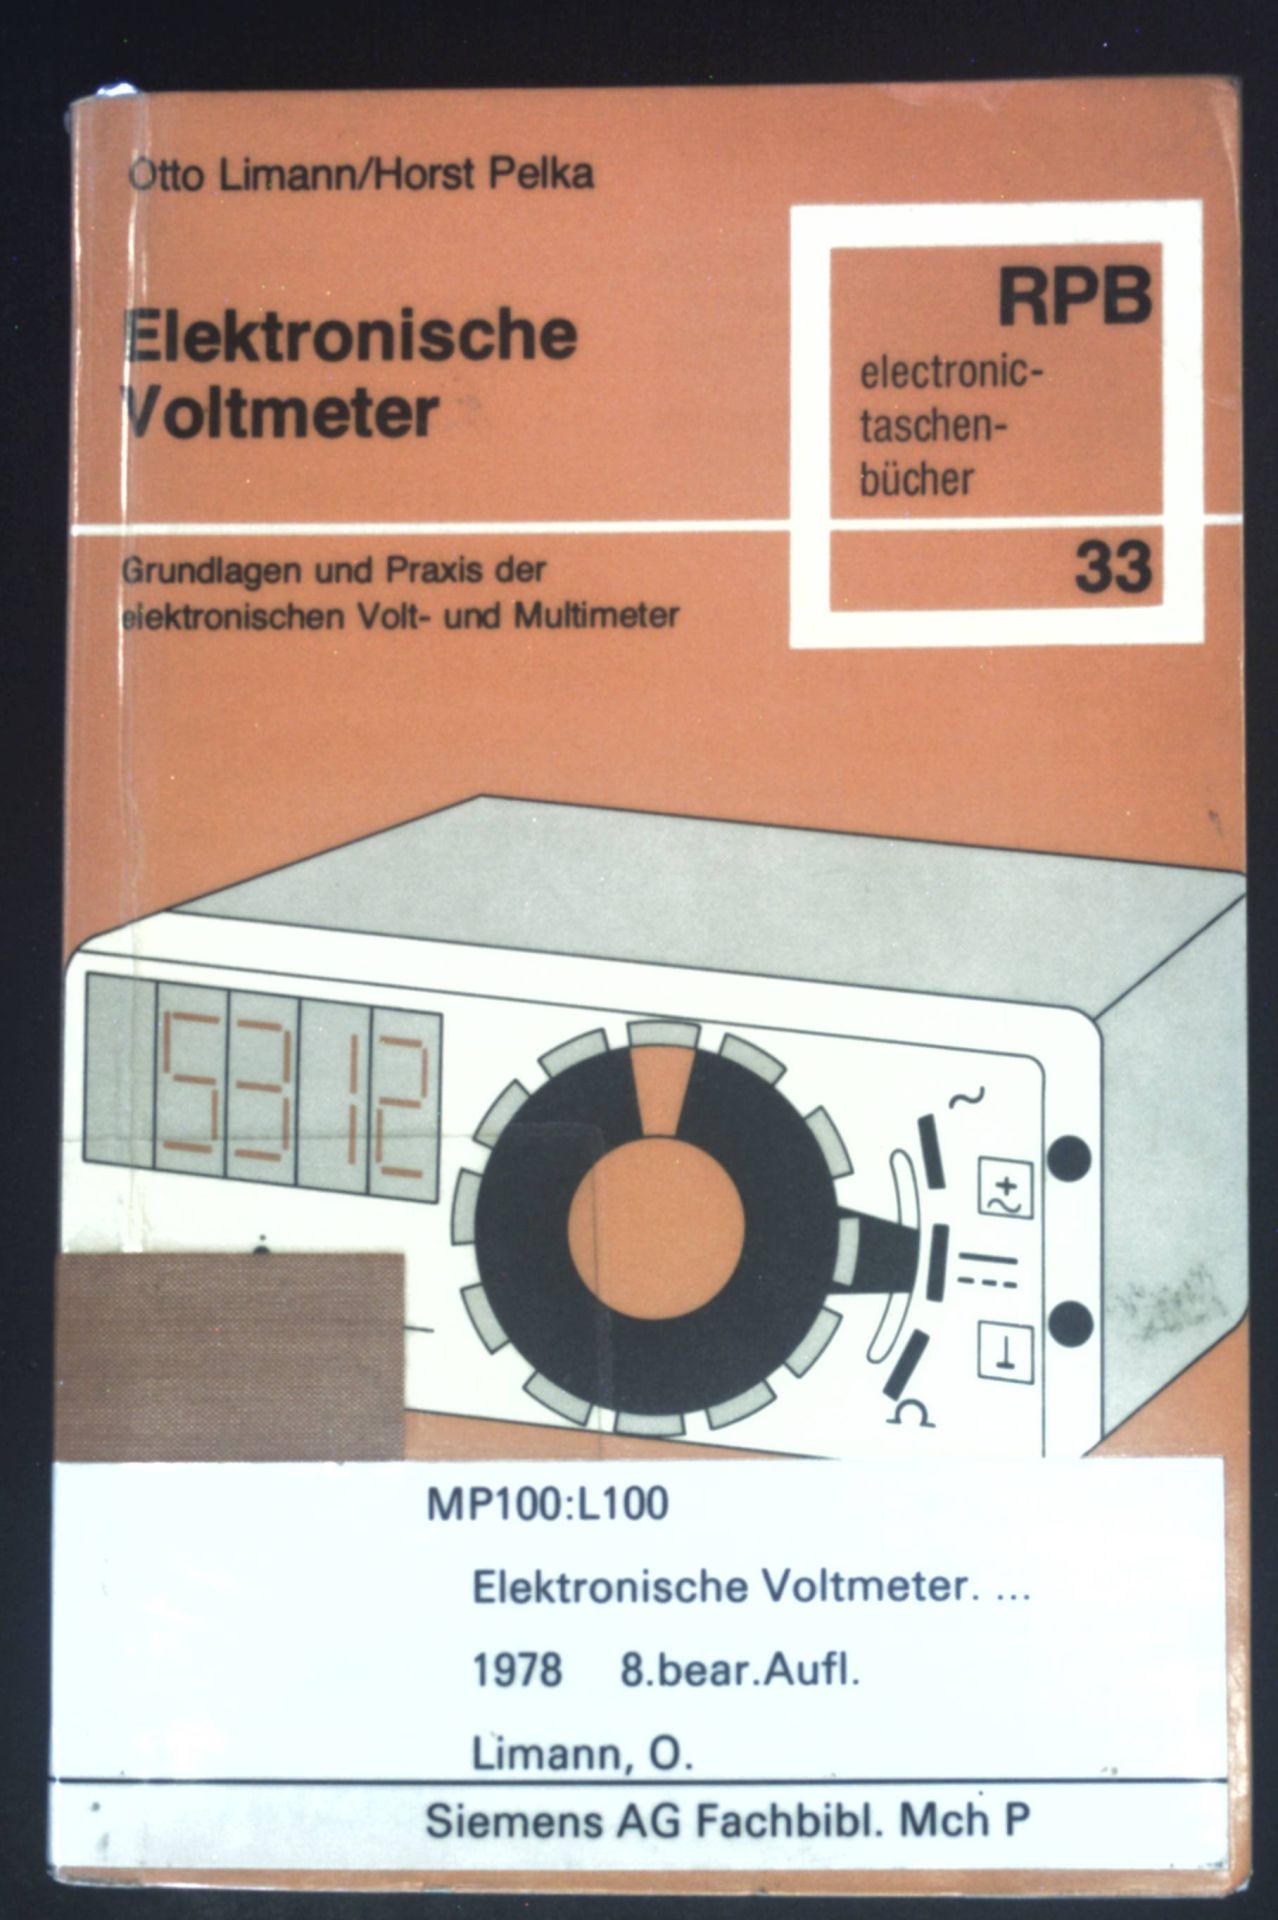 Elektronische Voltmeter : Grundlagen u. Praxis d. elektron. Voltmeter u. Multimeter. RPB-Elektronik-Taschenbücher ; Nr. 33 - Limann, Otto und Horst Pelka